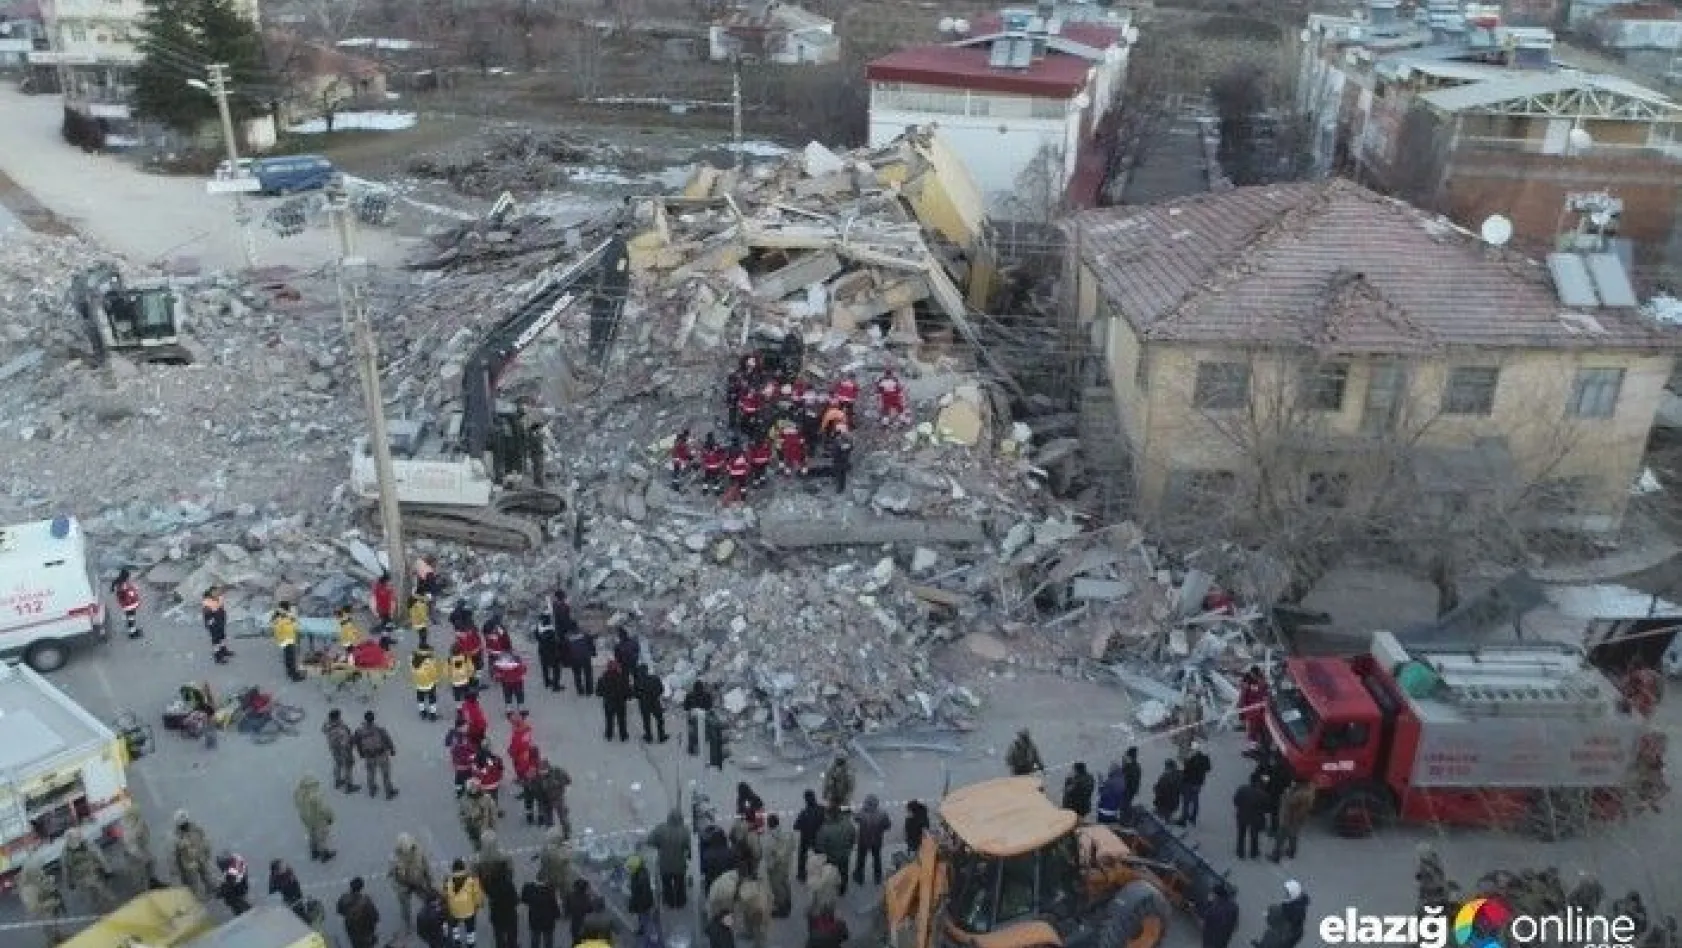 Elazığ'da Okullar Açılacak Mı?